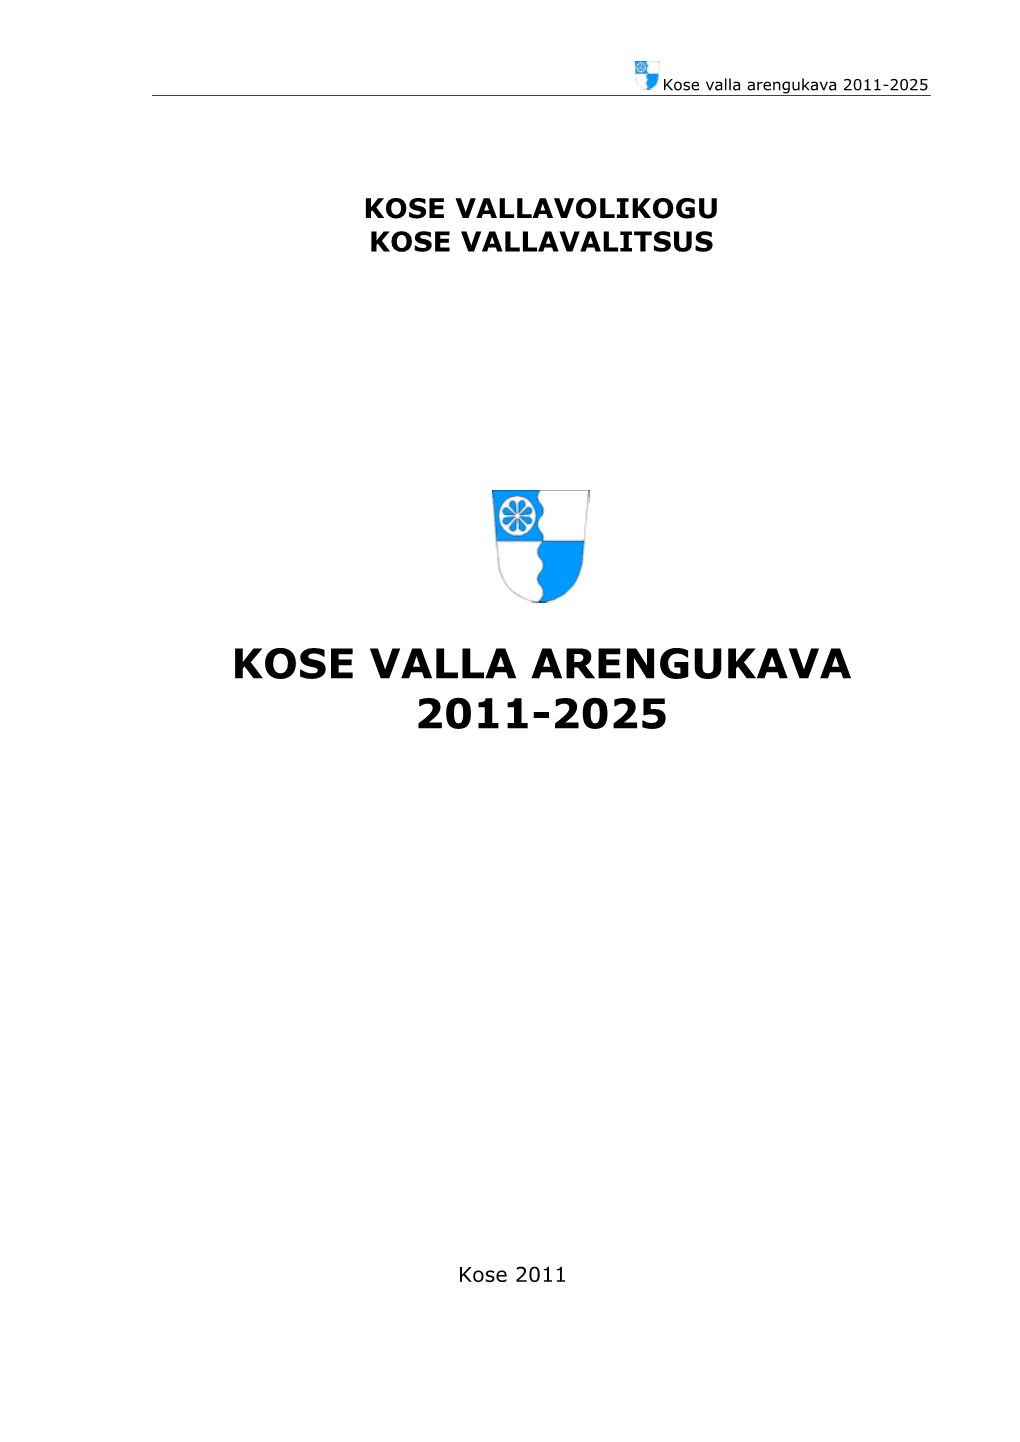 Kose Valla Arengukava 2011-2025